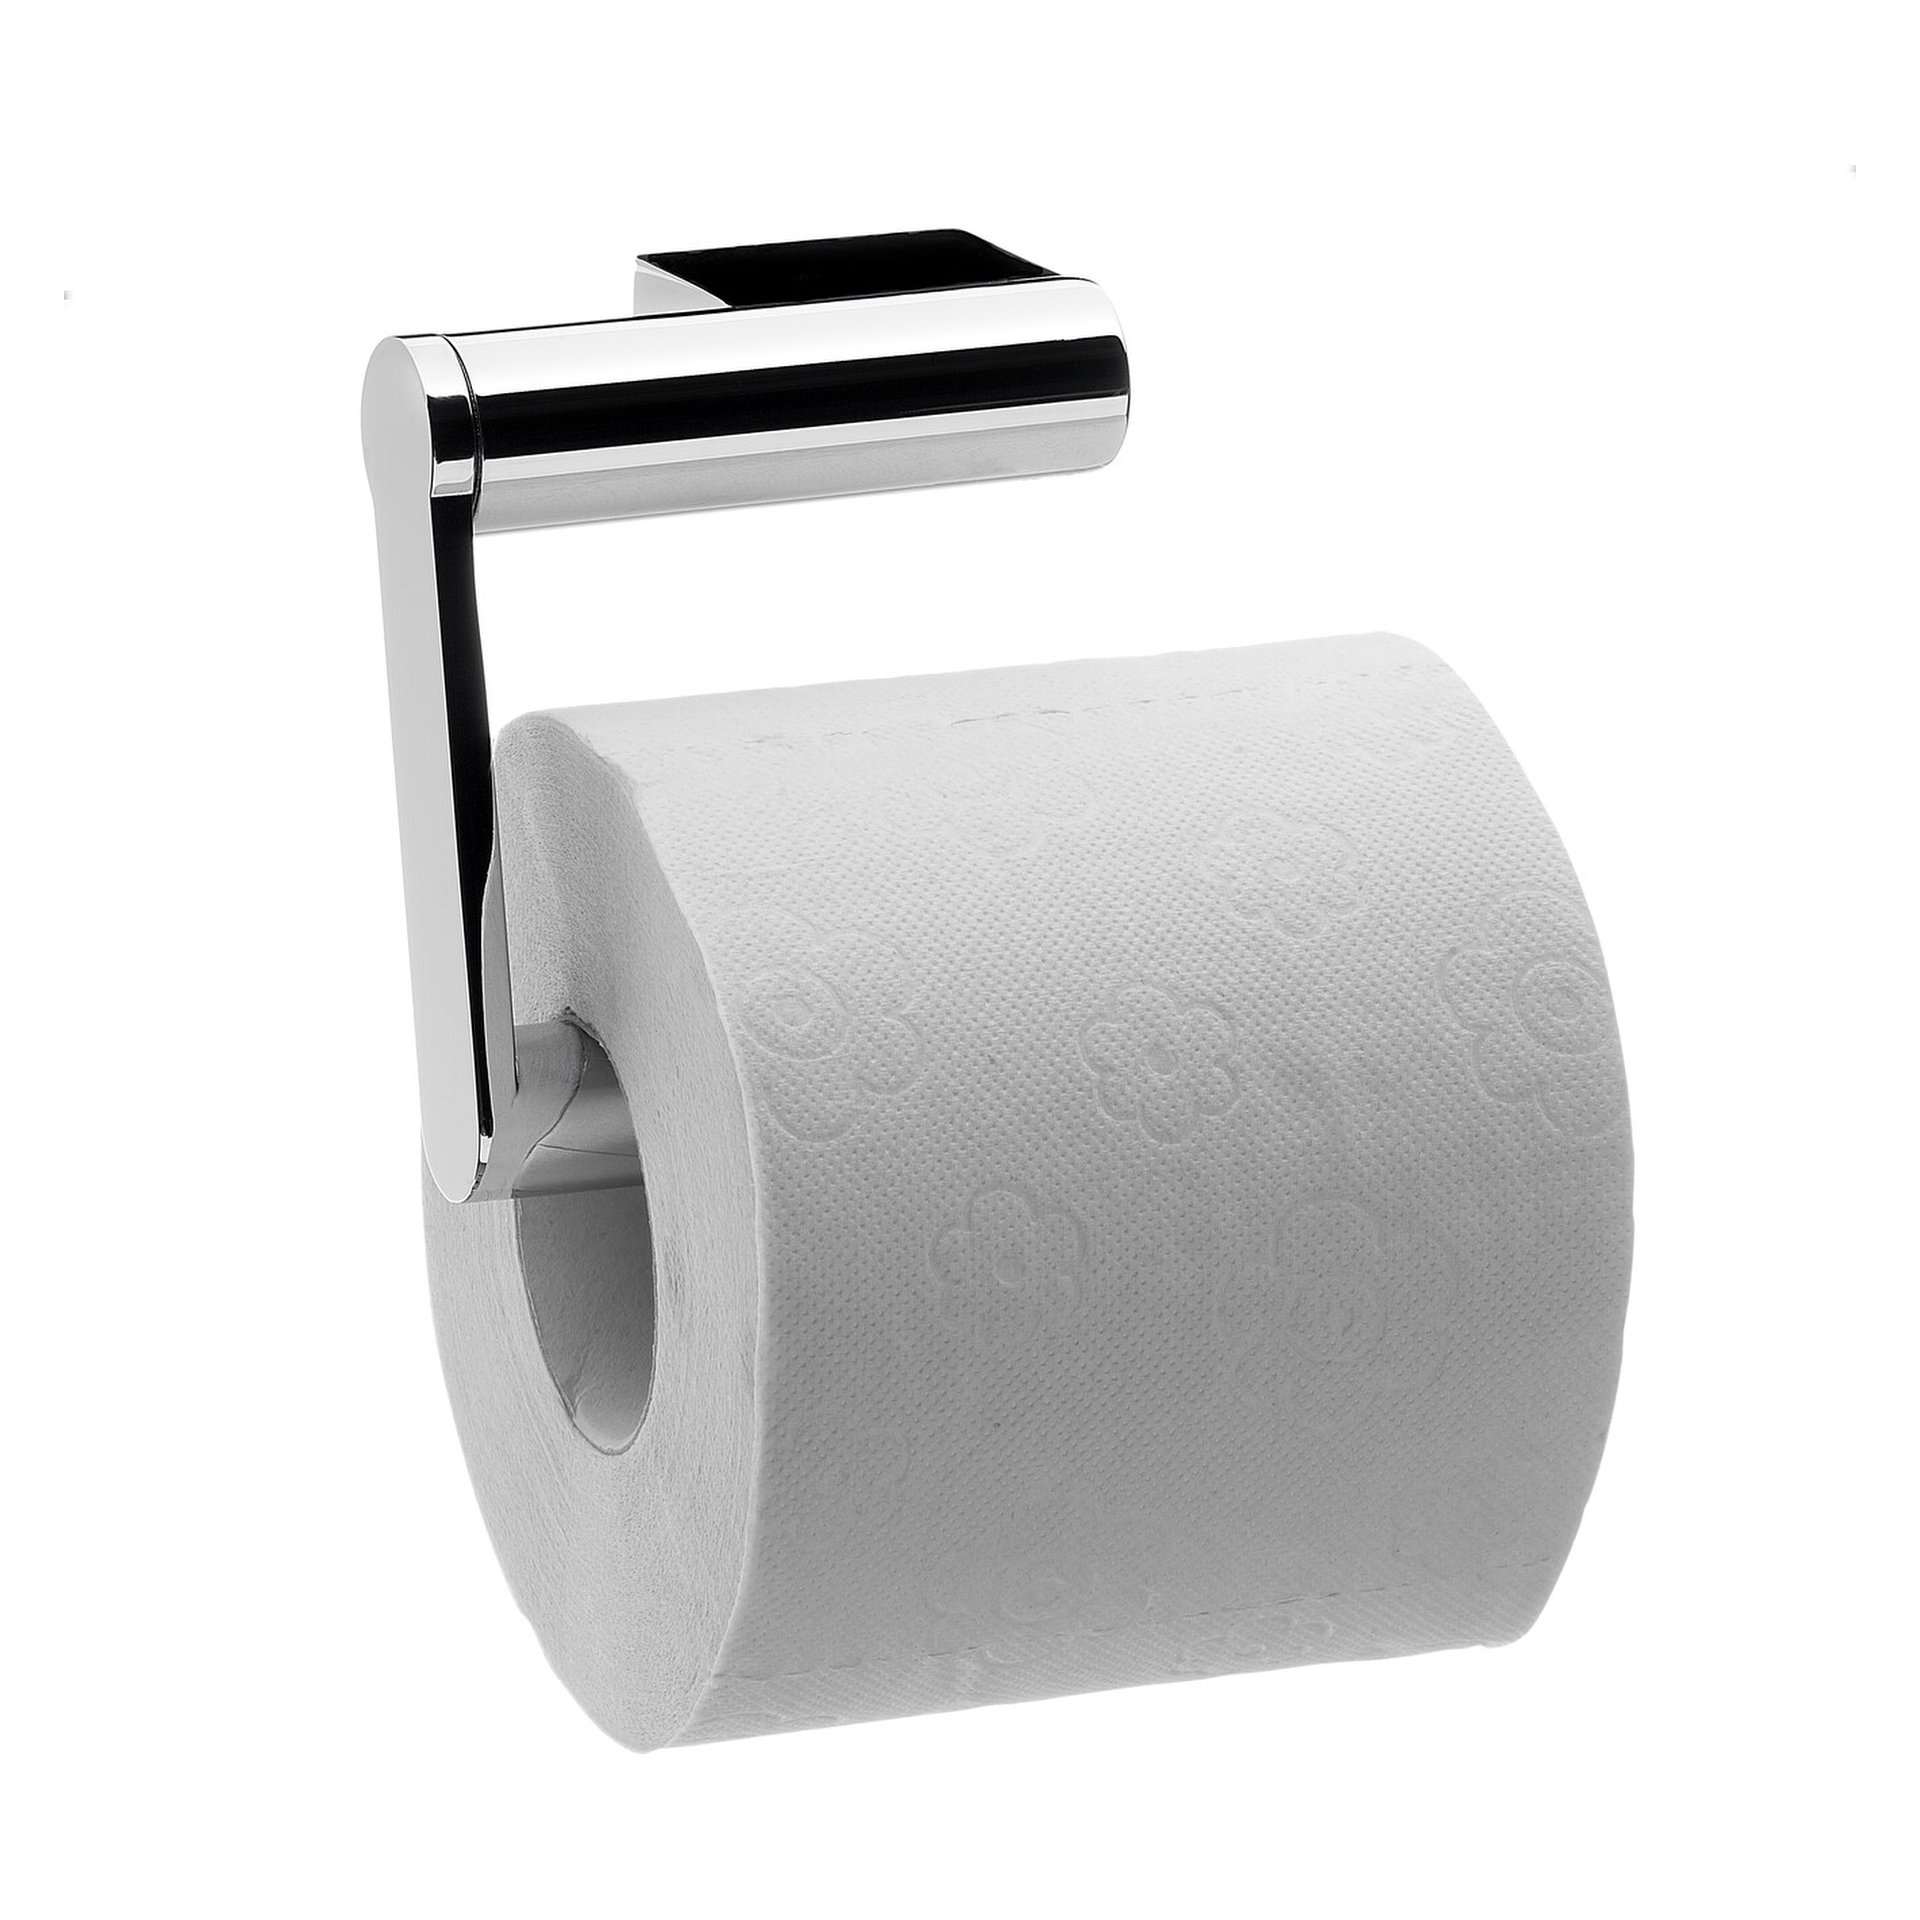 emco Toilettenpapierhalter ohne Deckel „system 2“ 6,8 × 8,7 cm in chrom, Befestigung verdeckt